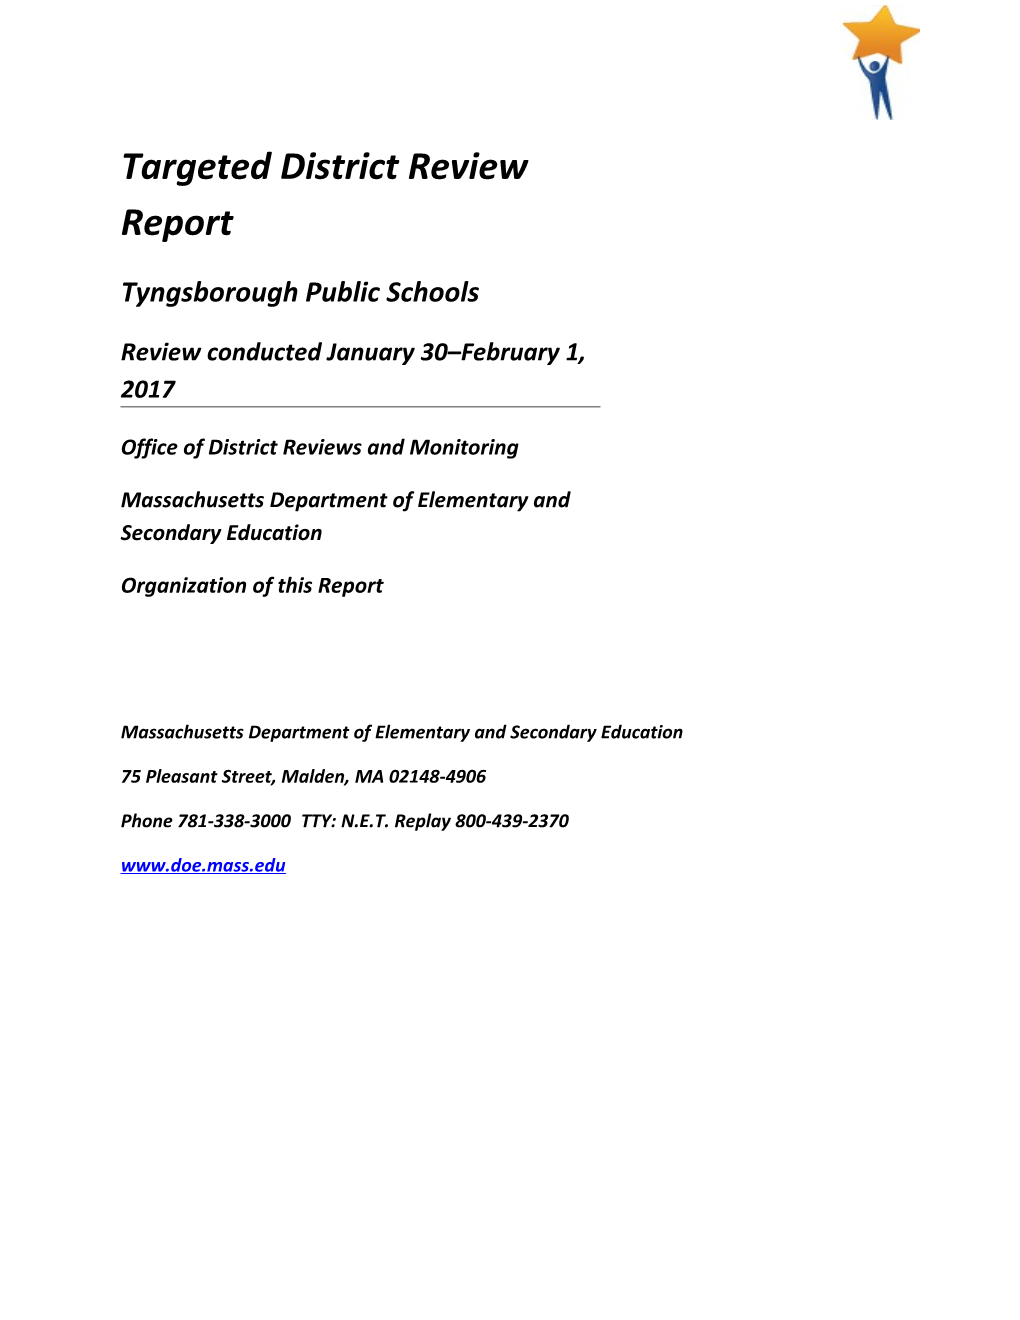 Tyngsborough Review Report, Onsite 2017